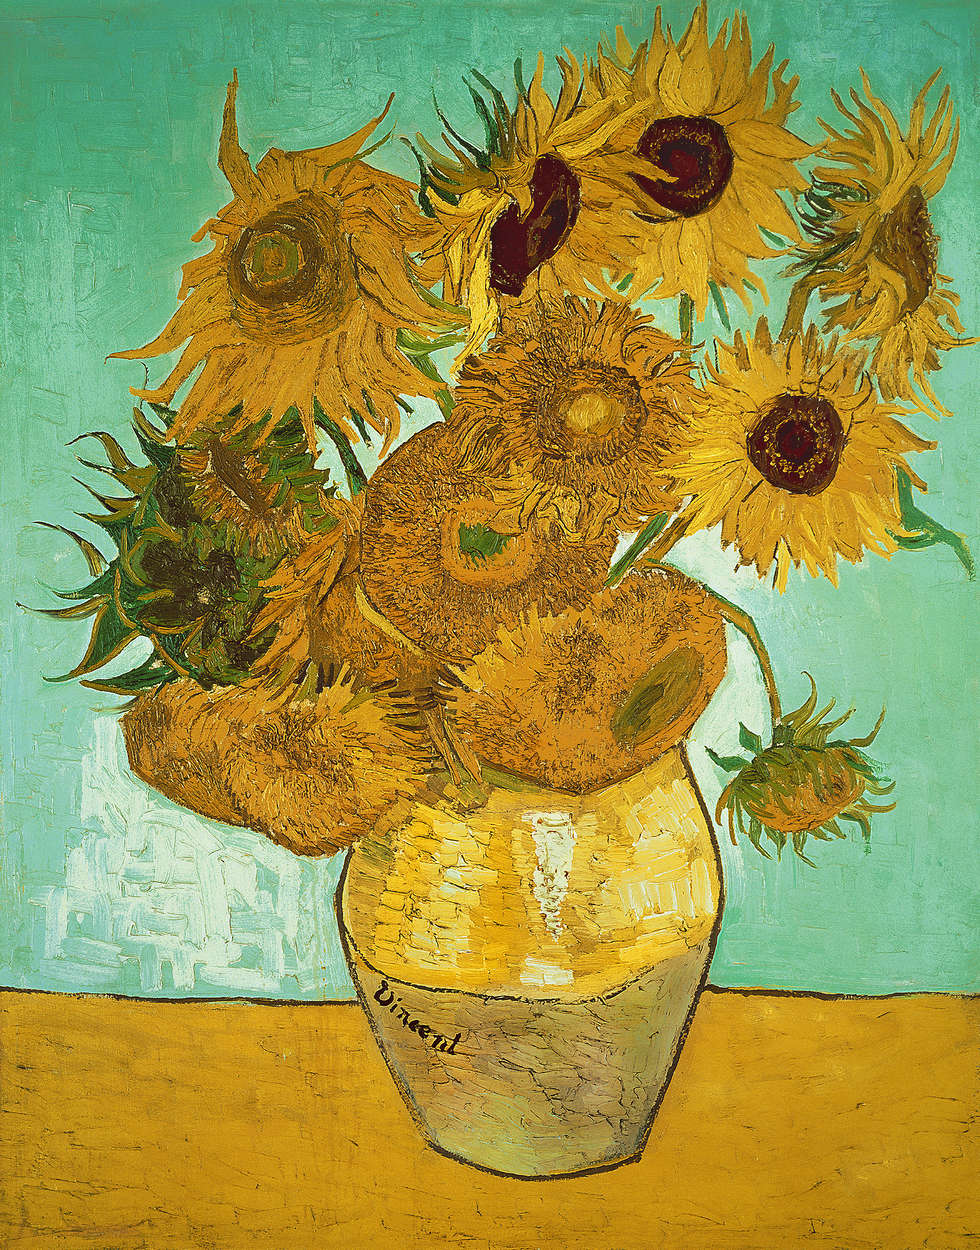             Fototapete "Sonnenblumen" von Vincent van Gogh
        